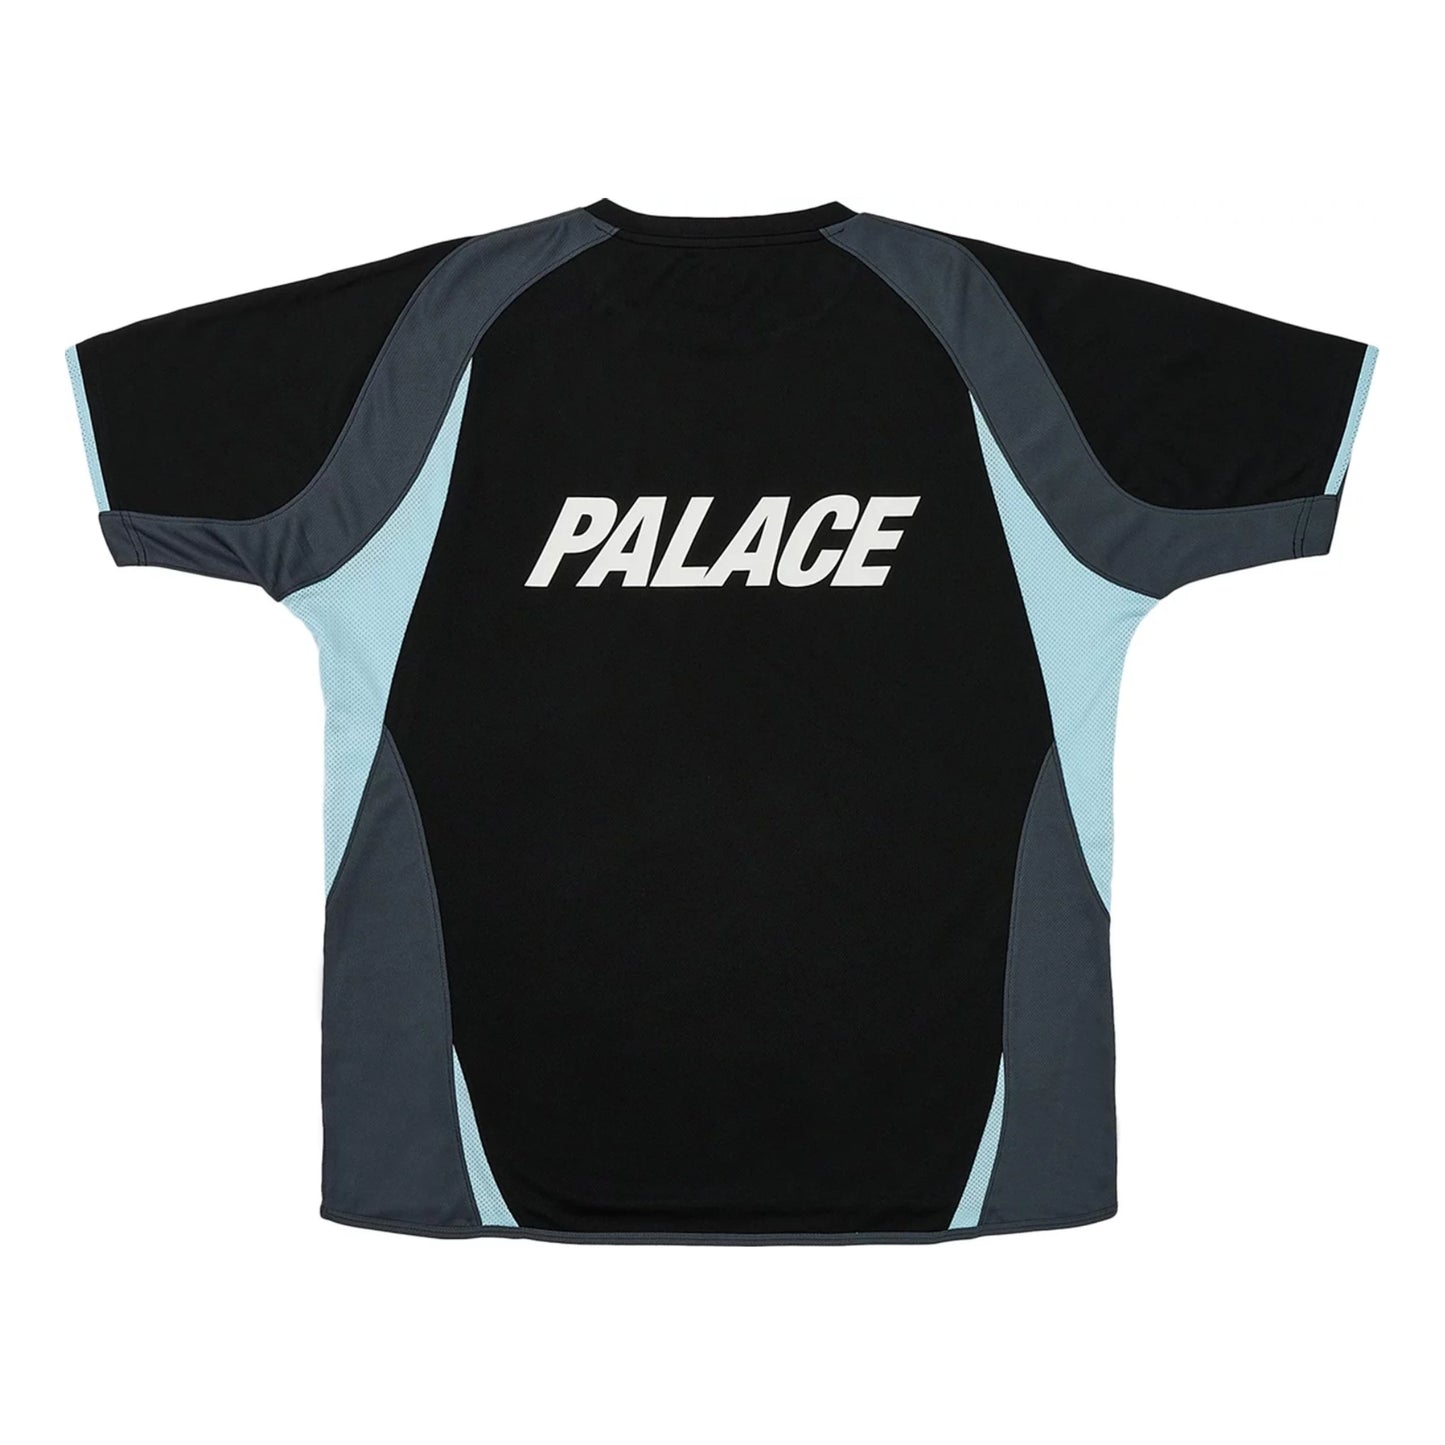 Palace Pro Jersey Black